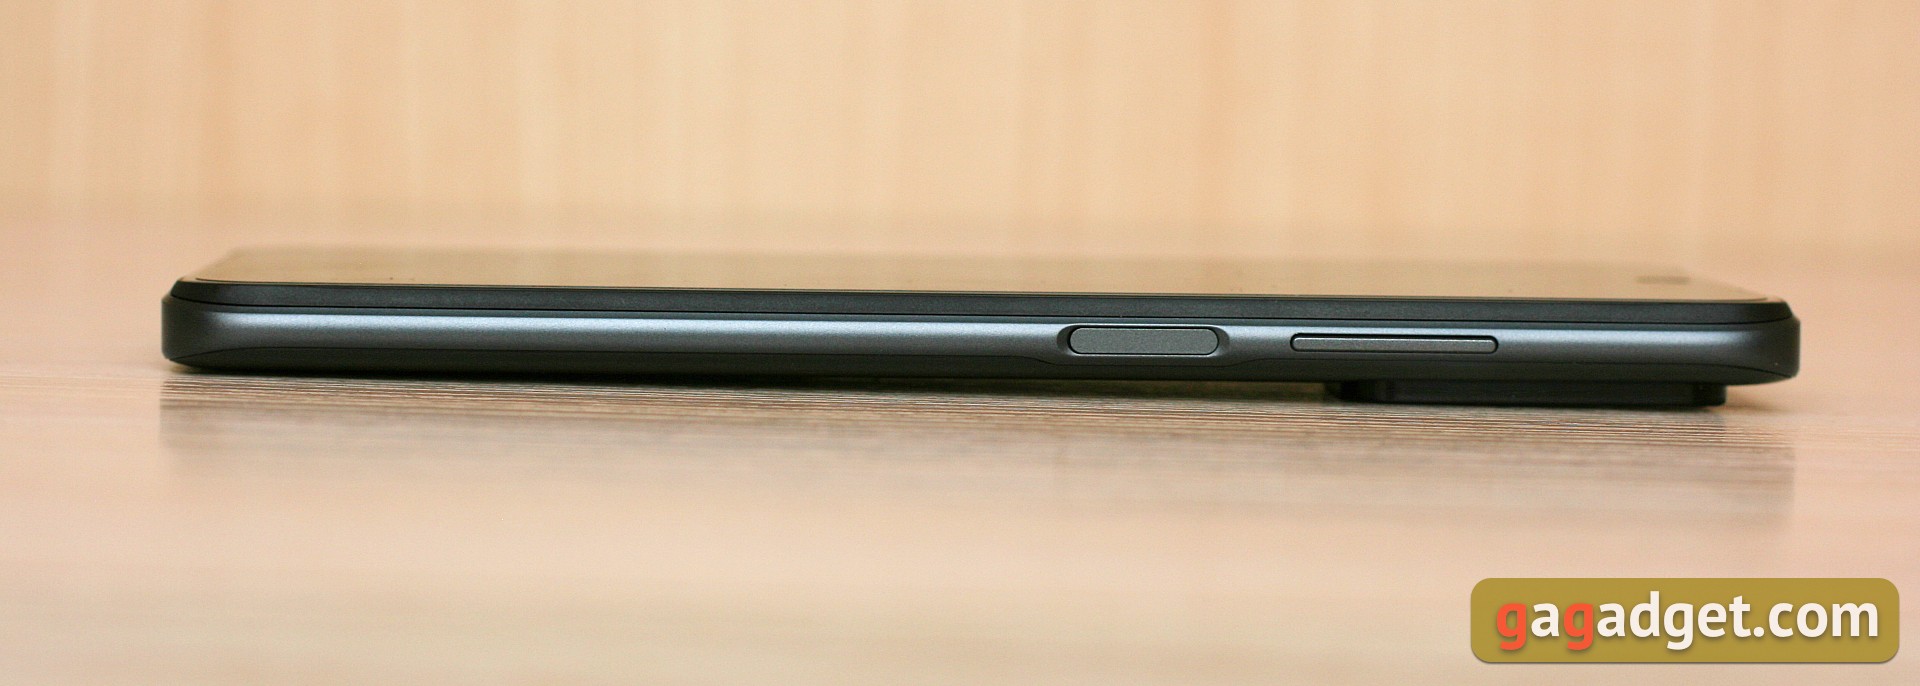 Обзор Xiaomi Redmi 10: легендарный бюджетник, теперь с 50-мегапиксельной камерой-8